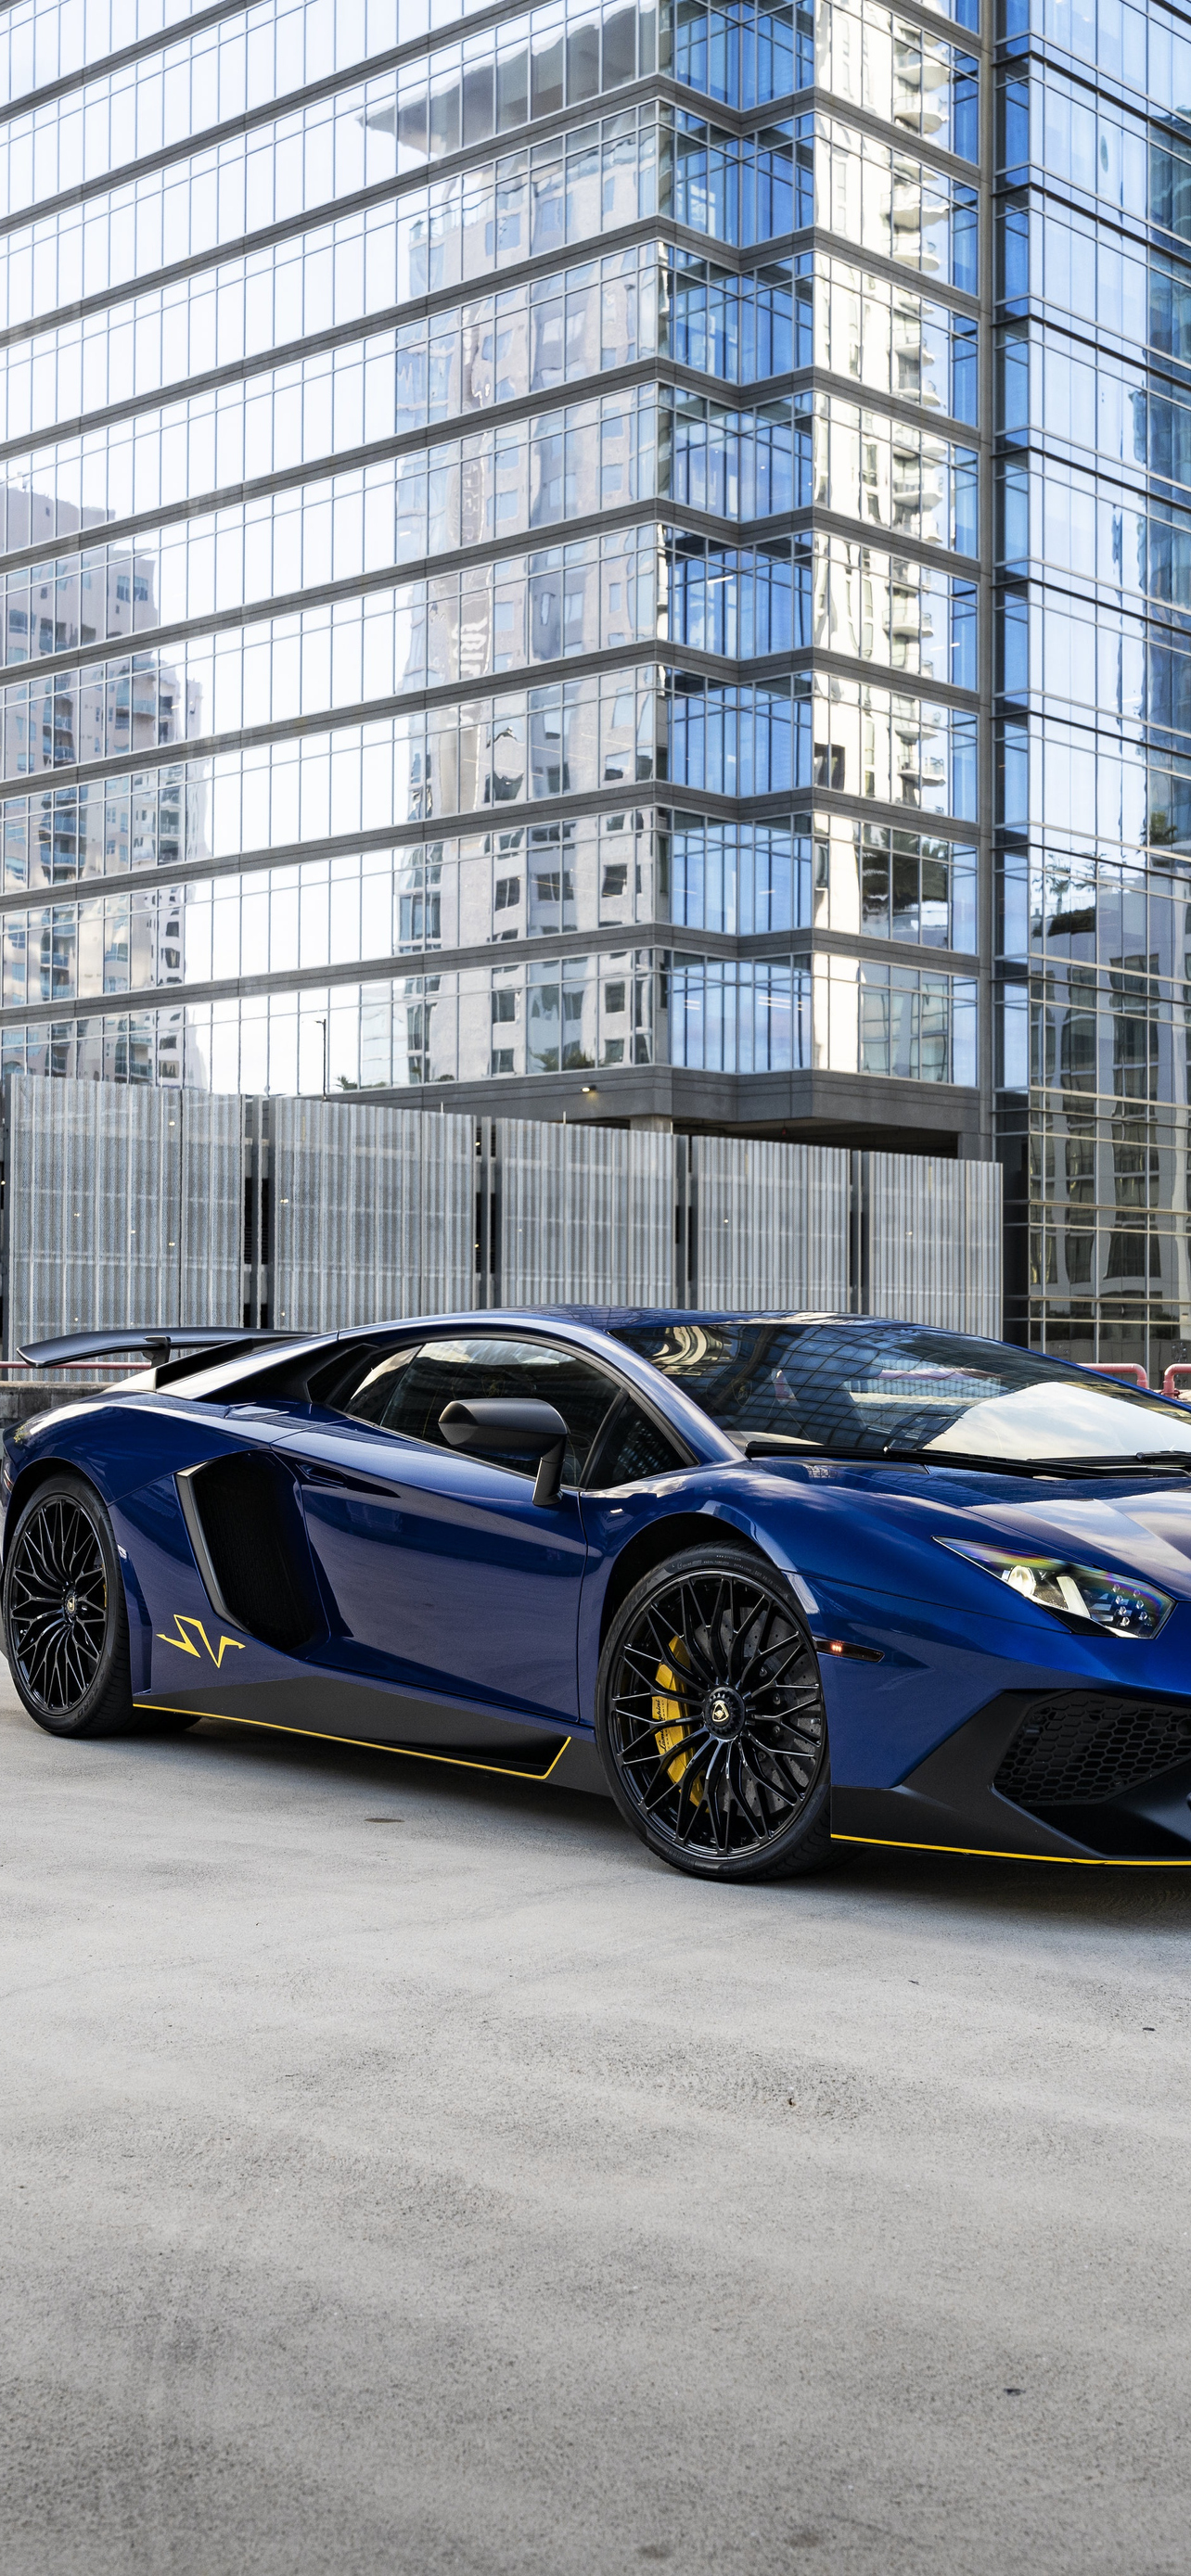 Download Lamborghini Aventador, Lamborghini, Blue, Aventador, Blue  Wallpaper in 1284x2778 Resolution